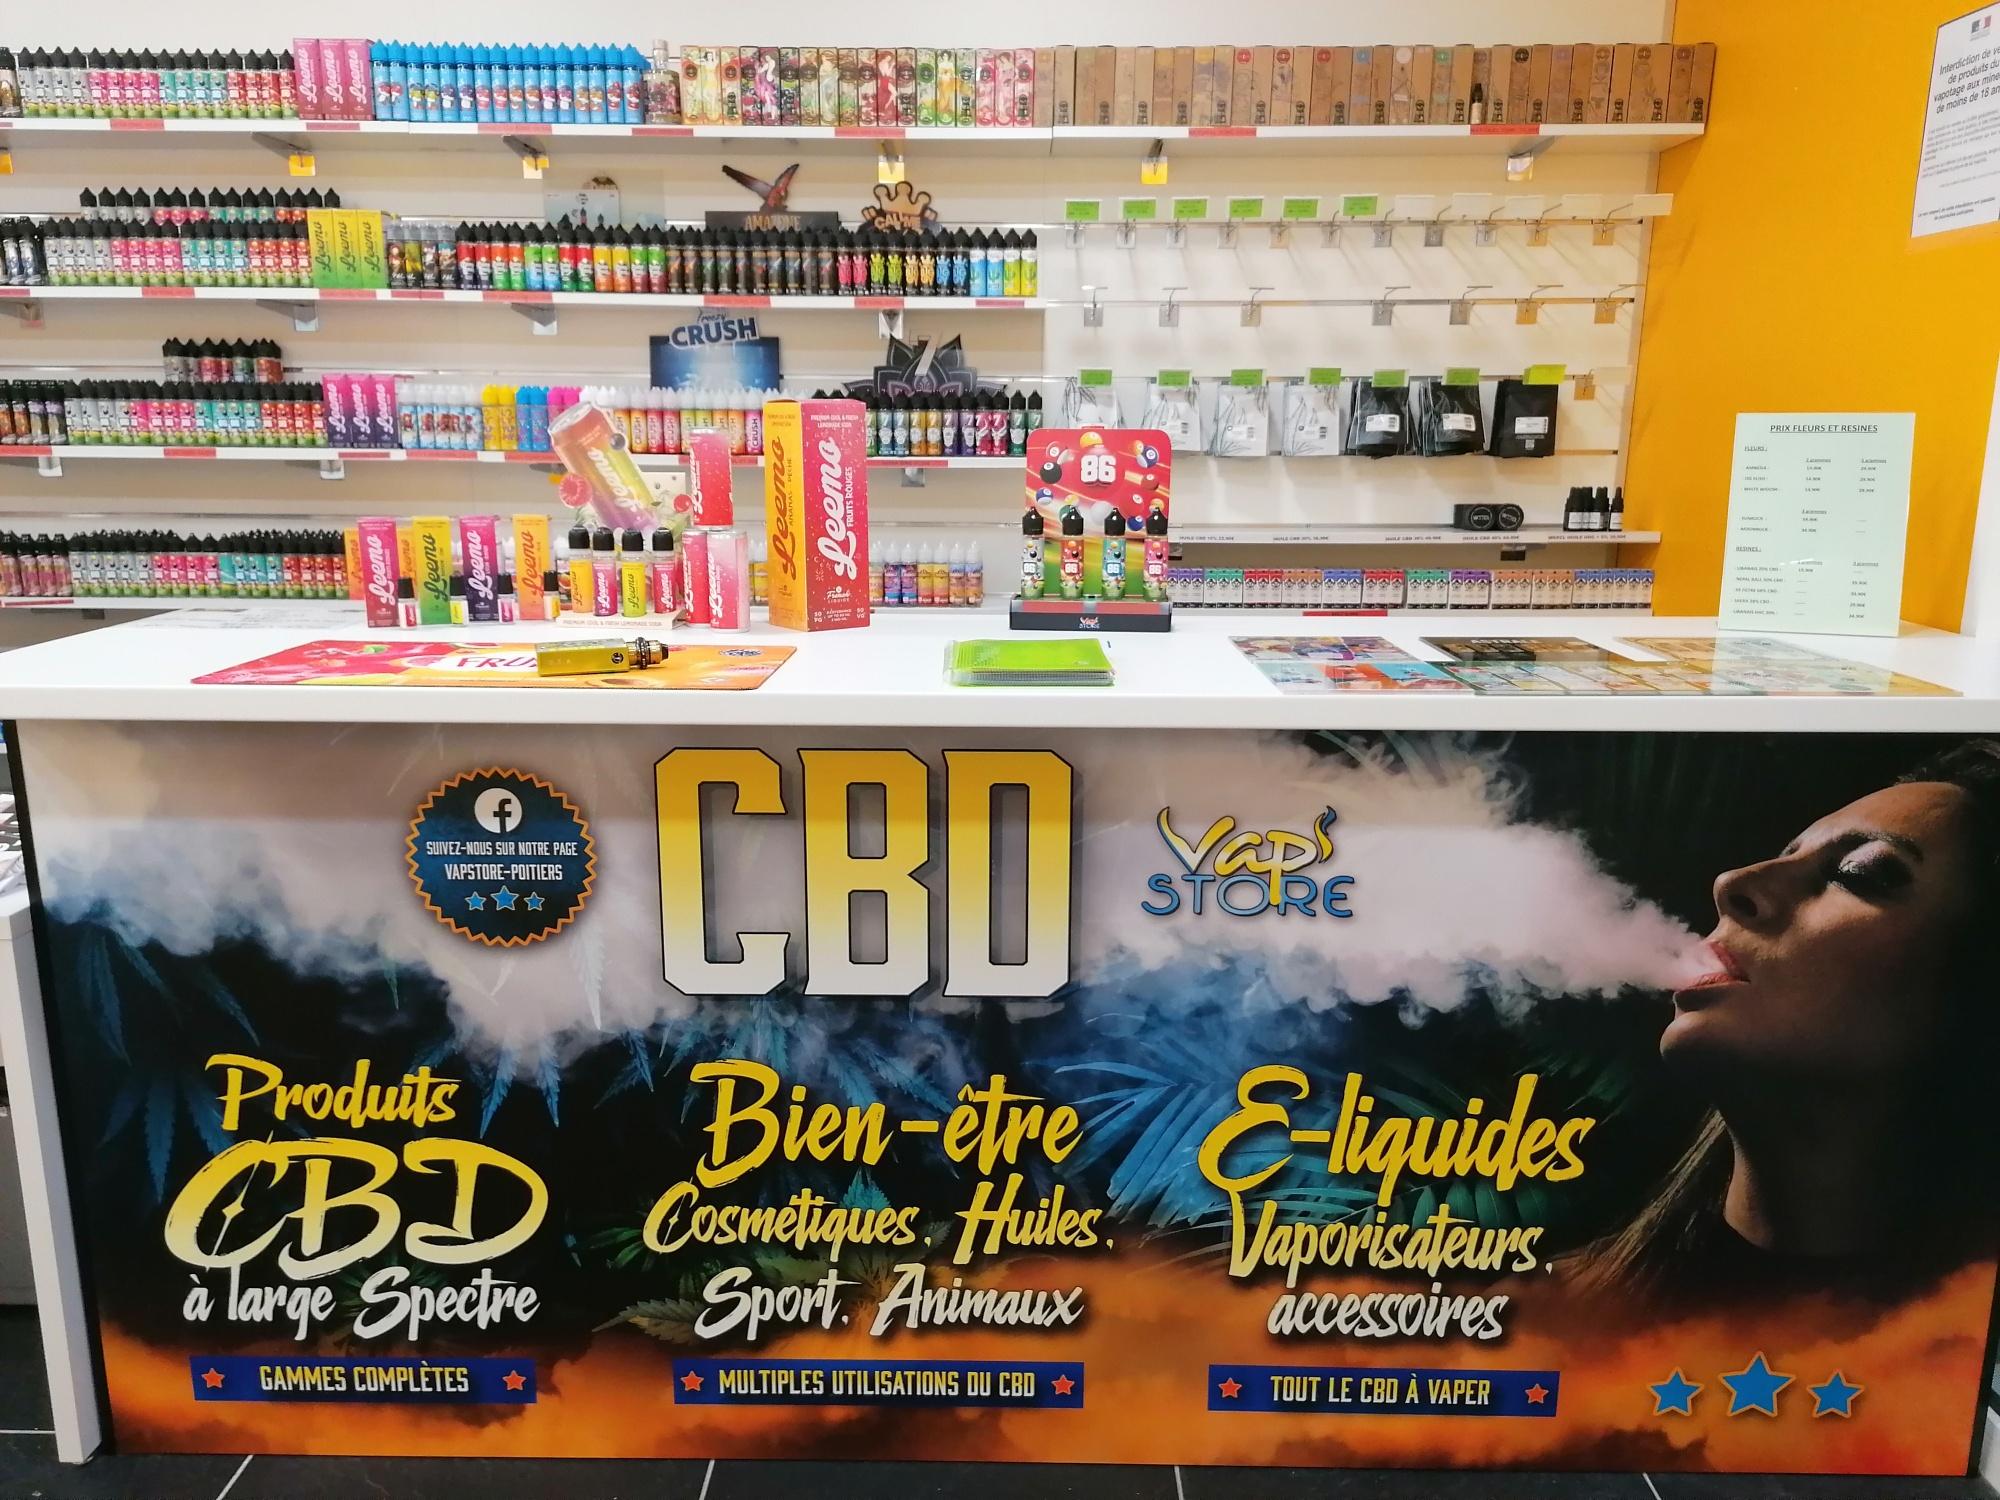 Vap'store & Cbd Poitiers - Cigarette Electronique Poitiers